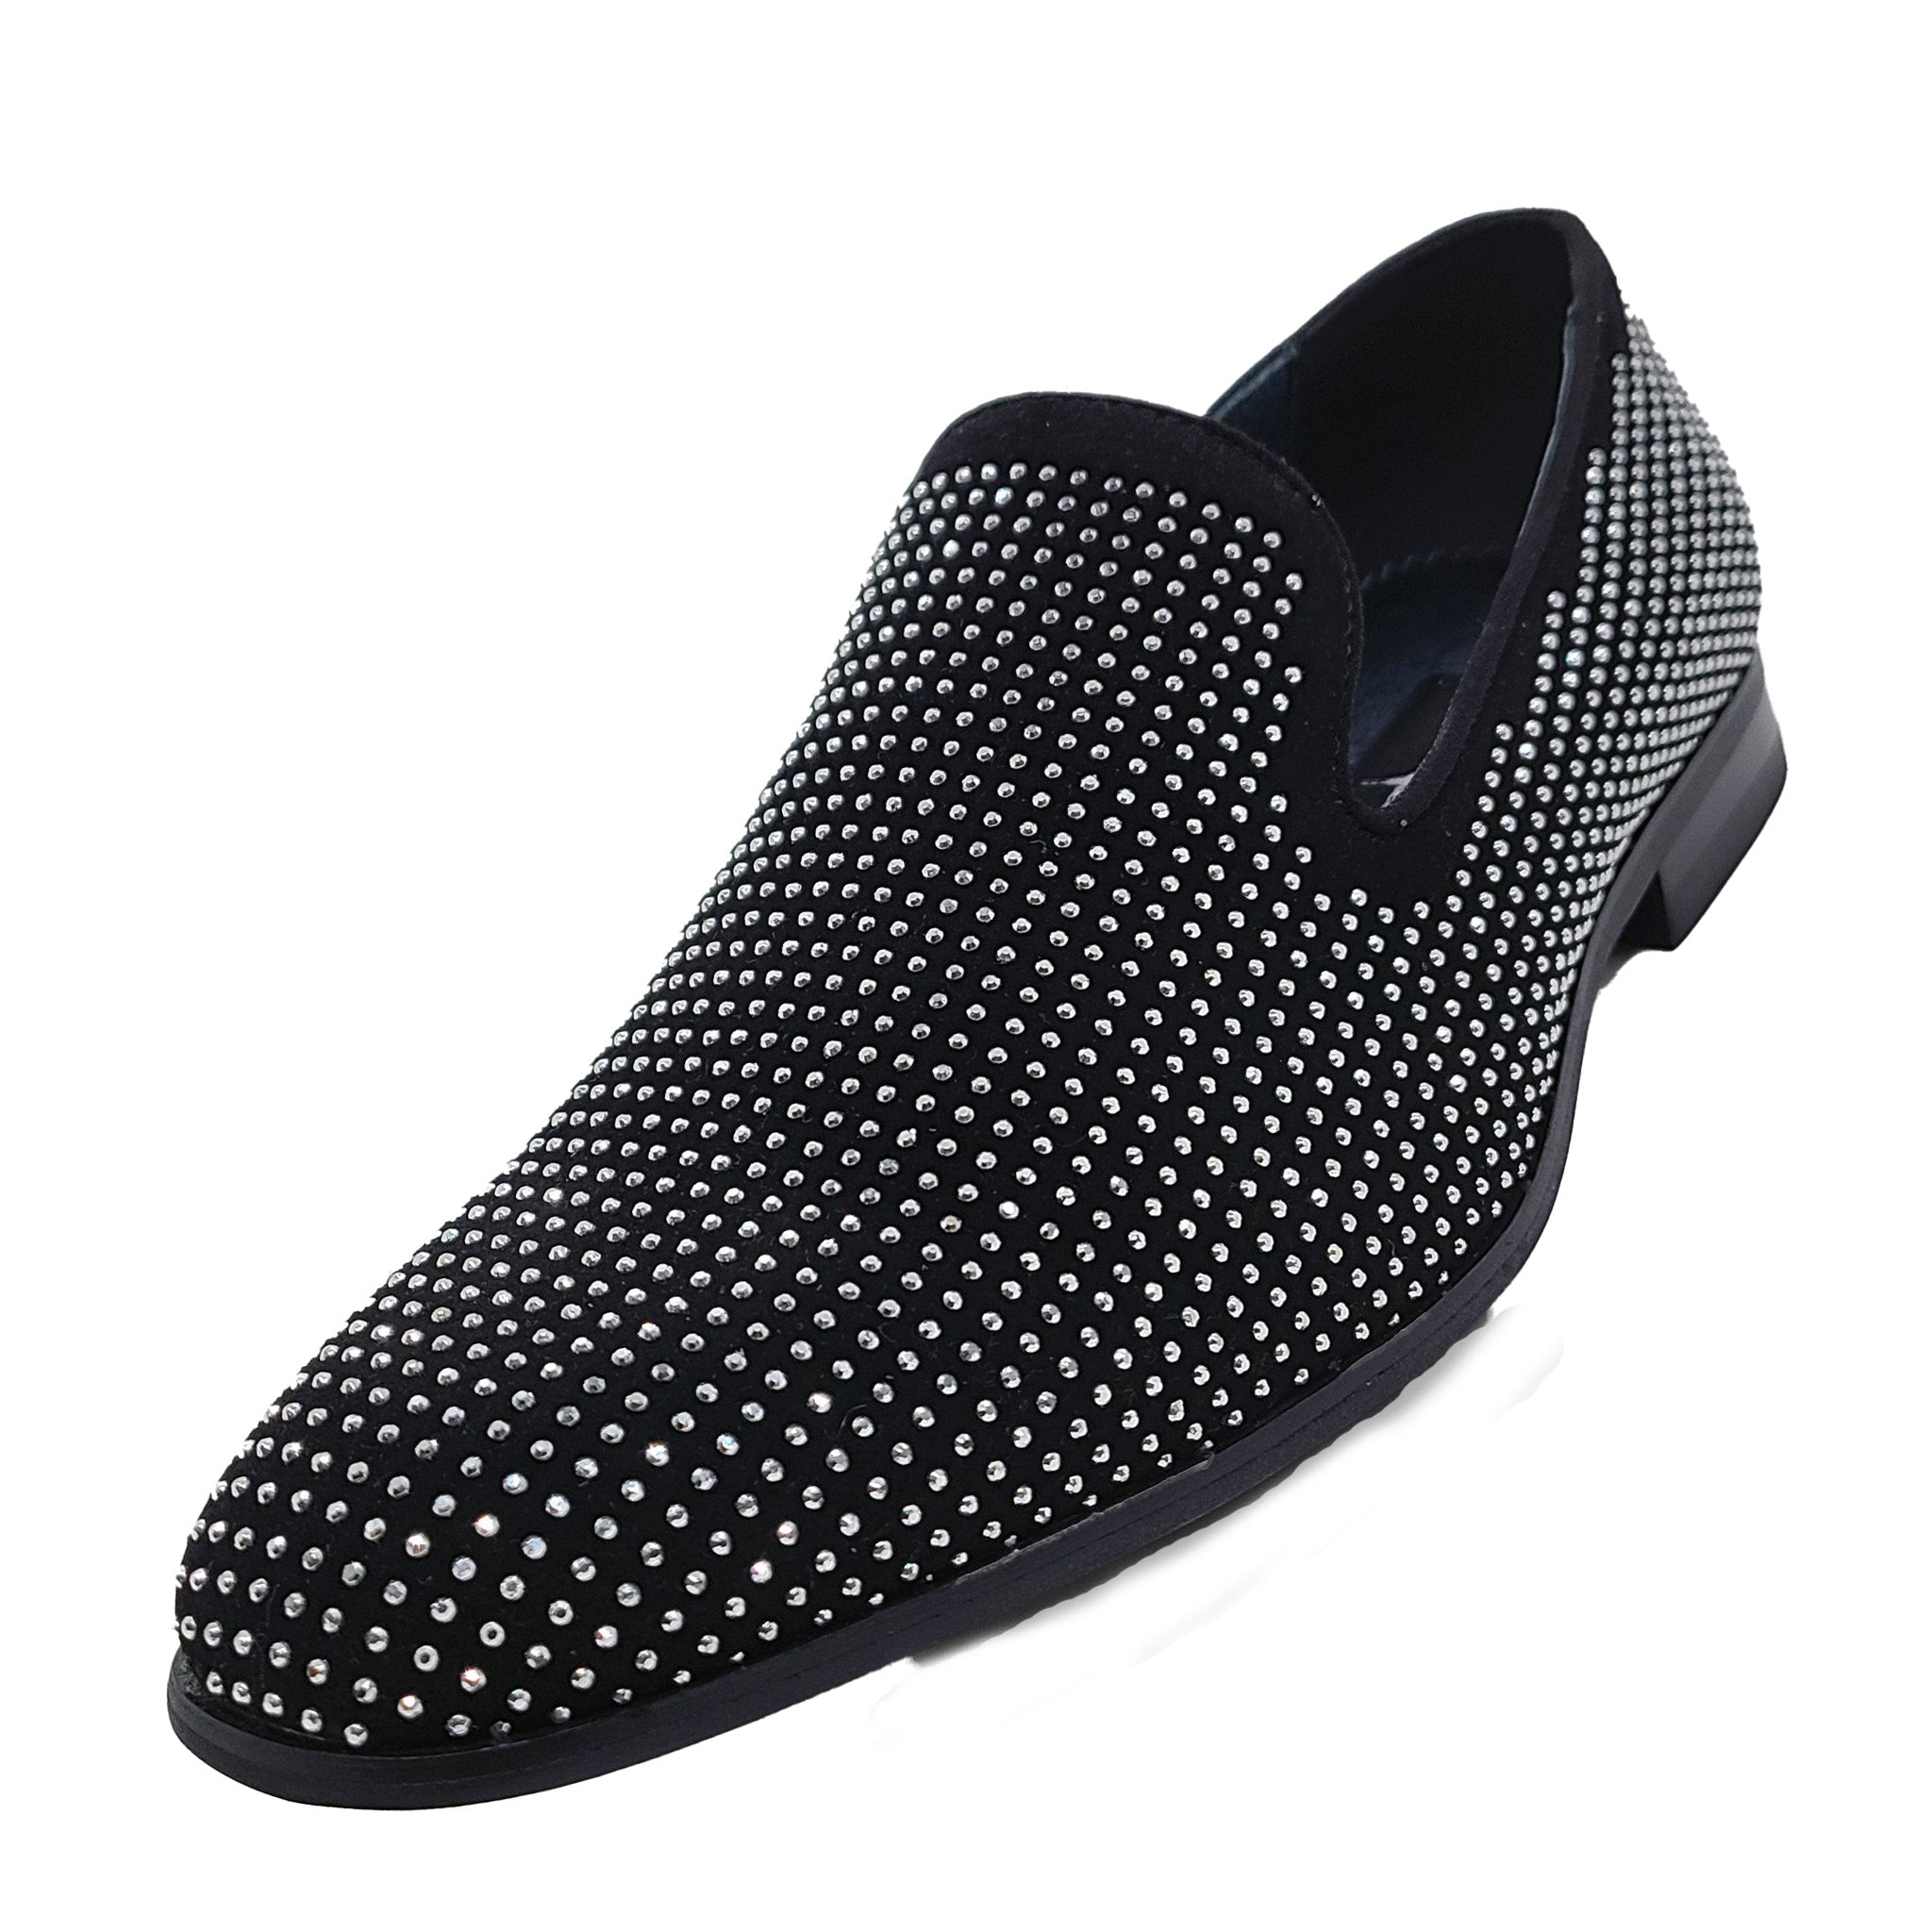 Black Crystal Studded Formal Loafers